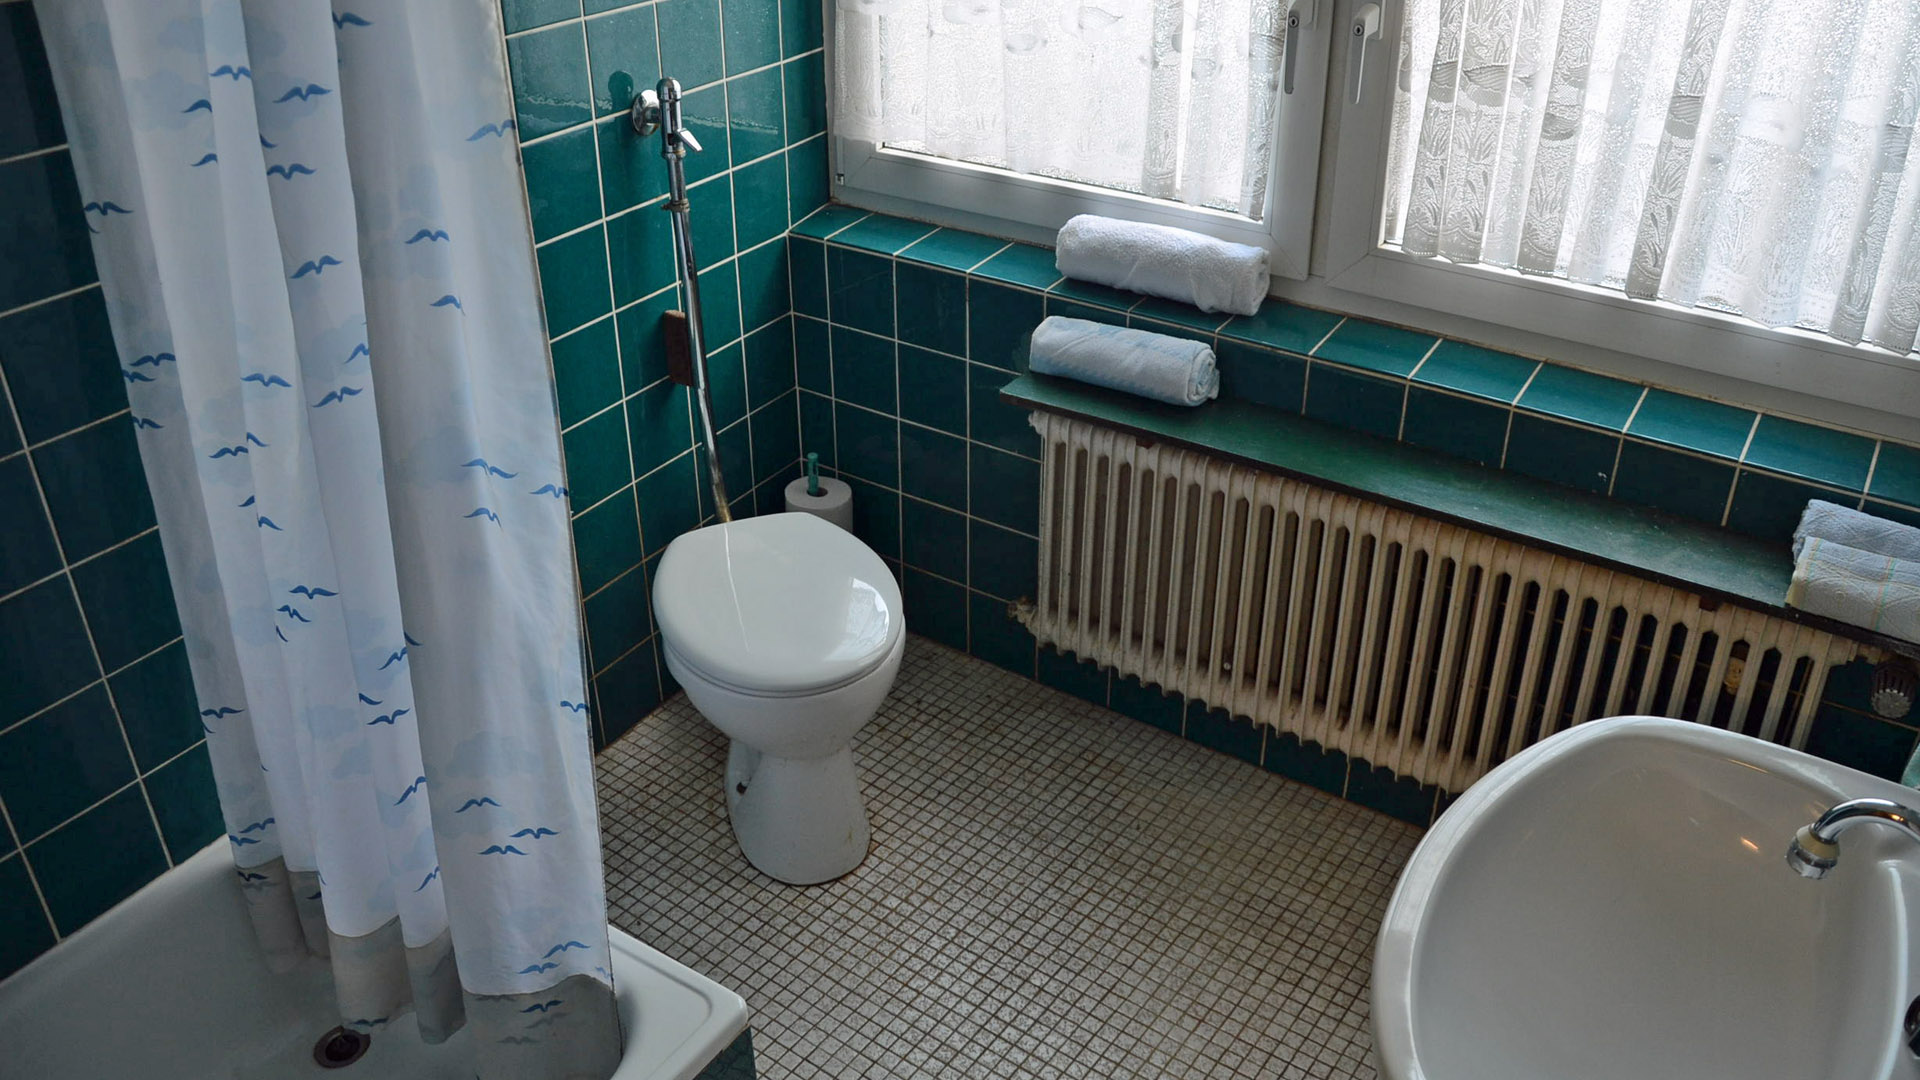 Morsbach: Kleines, preiswertes Wohnhaus mit herrlichem Blick, älteres Bad im Untergeschoss mit Du/WC